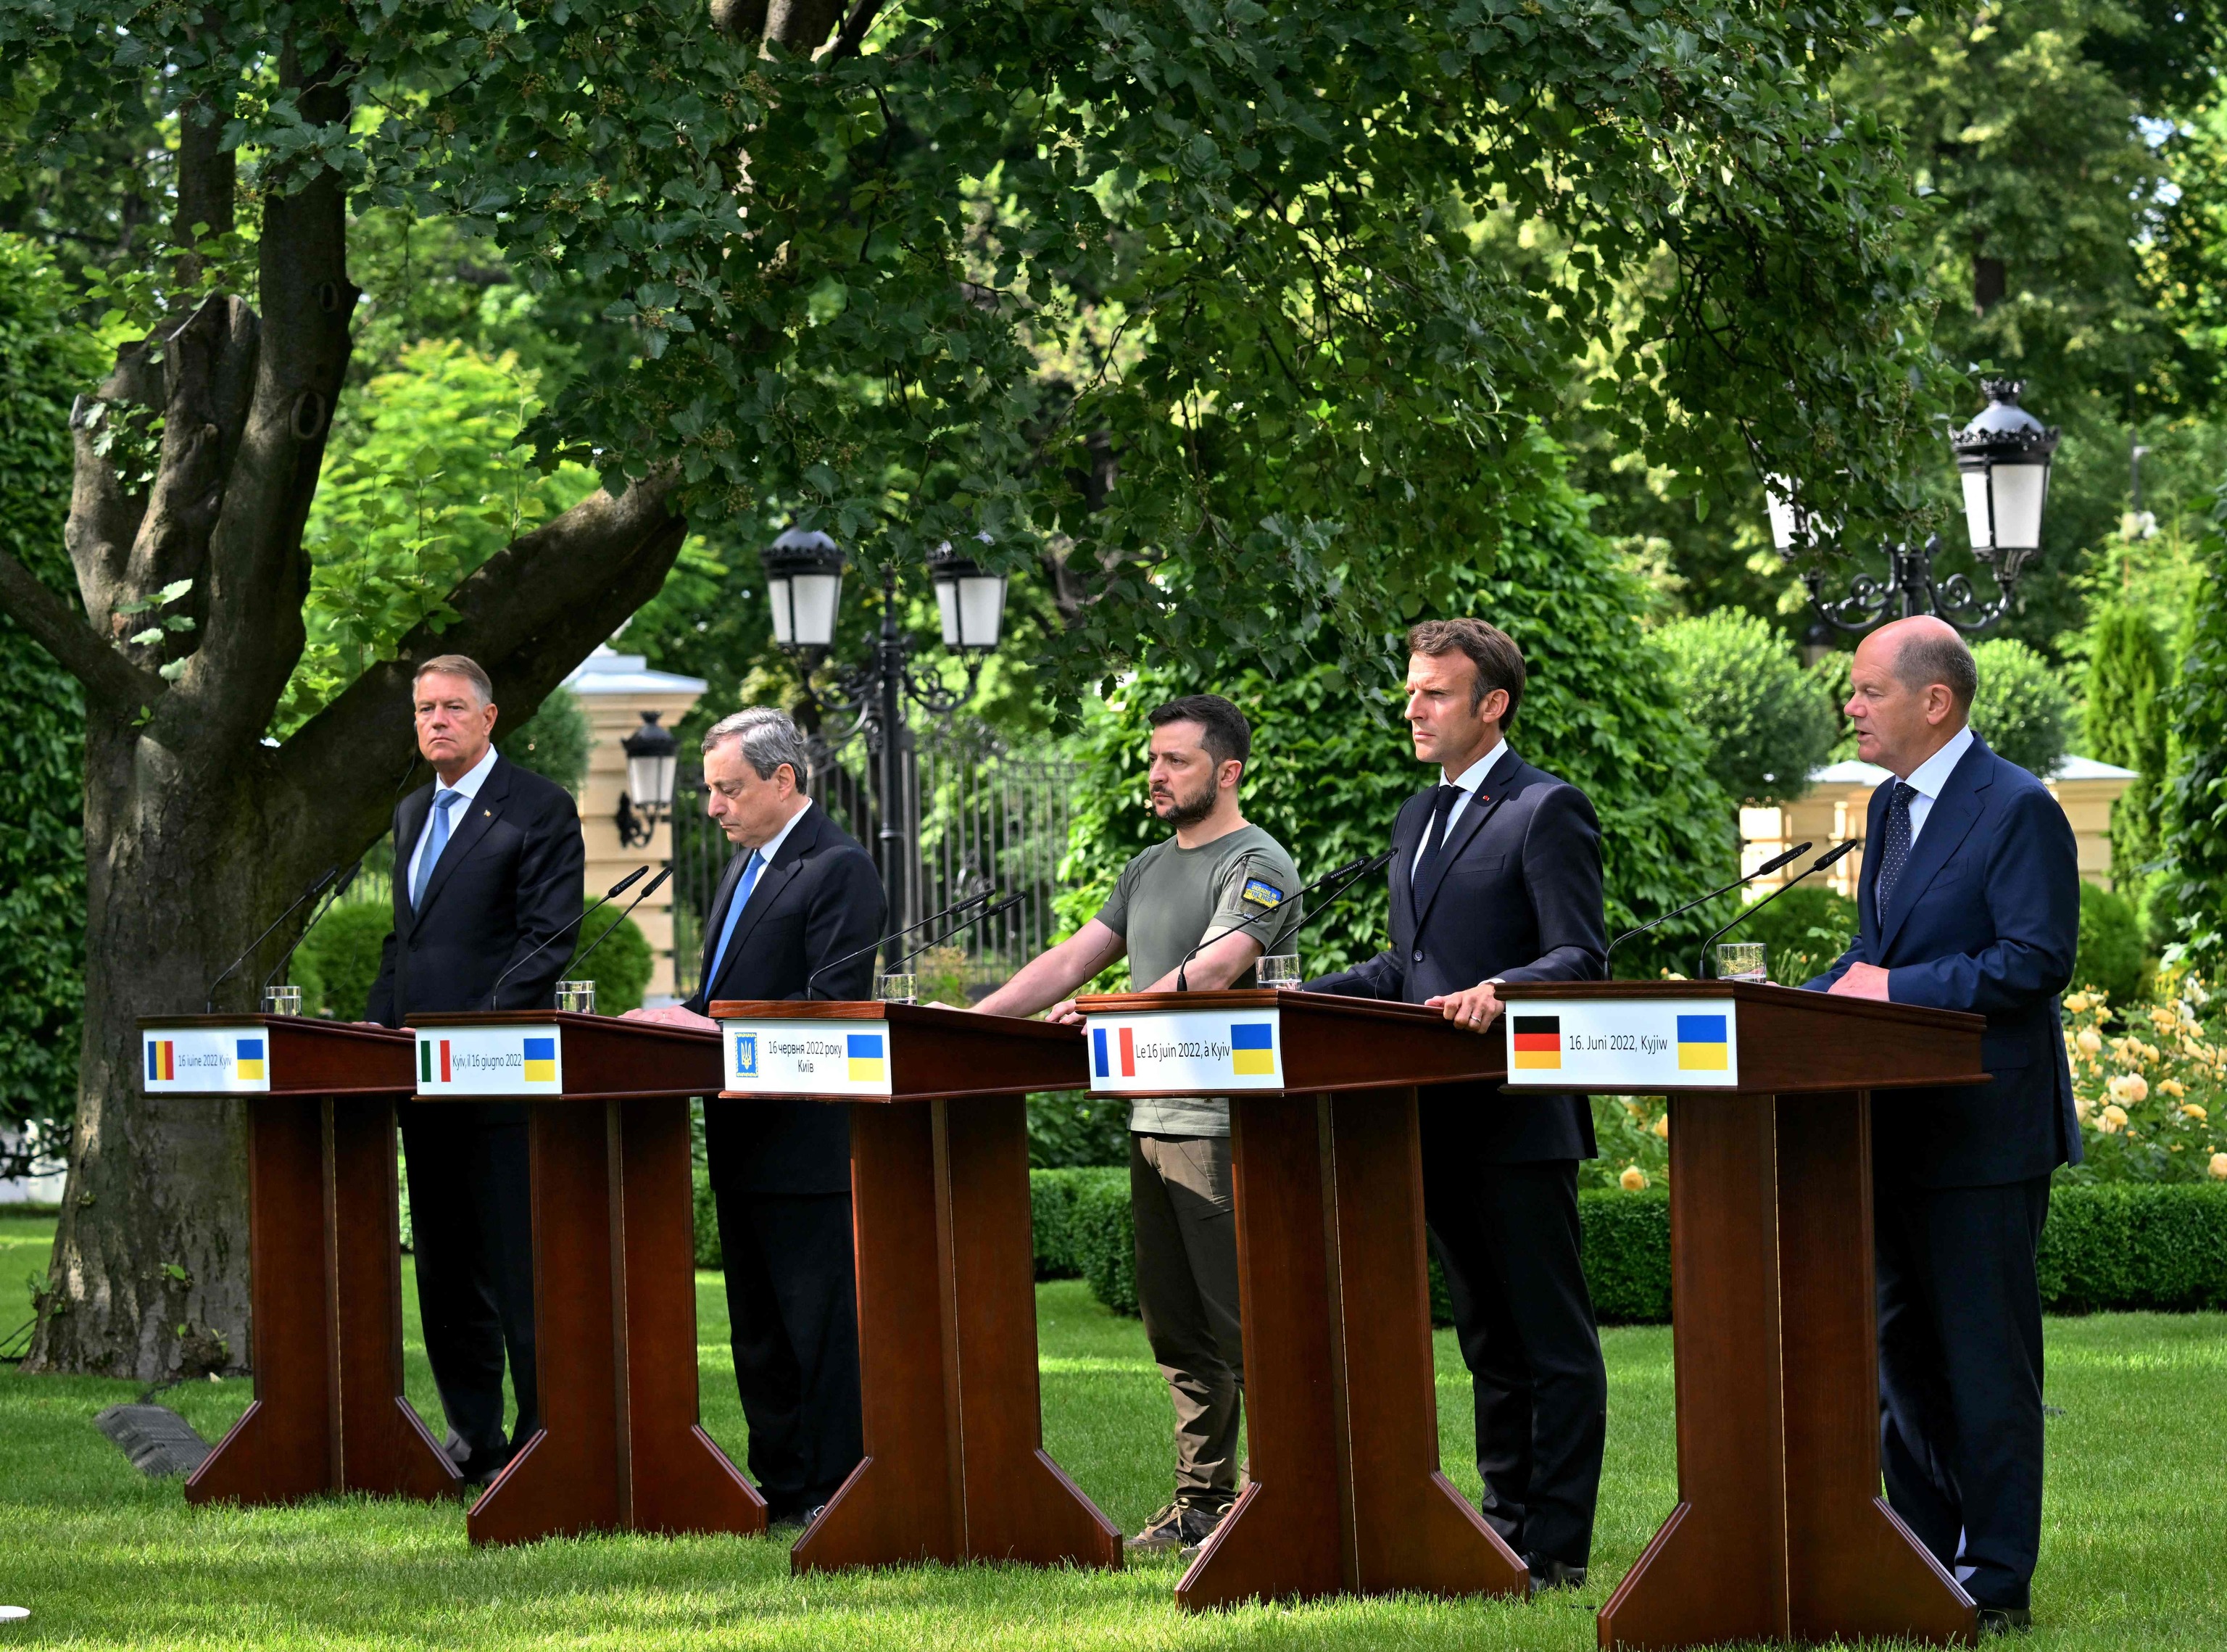 Romanian President Klaus Iohannes (left), Italian Prime Minister Mario Draghi (second from left), President of Ukraine Volodymyr Zelensky (center), French President